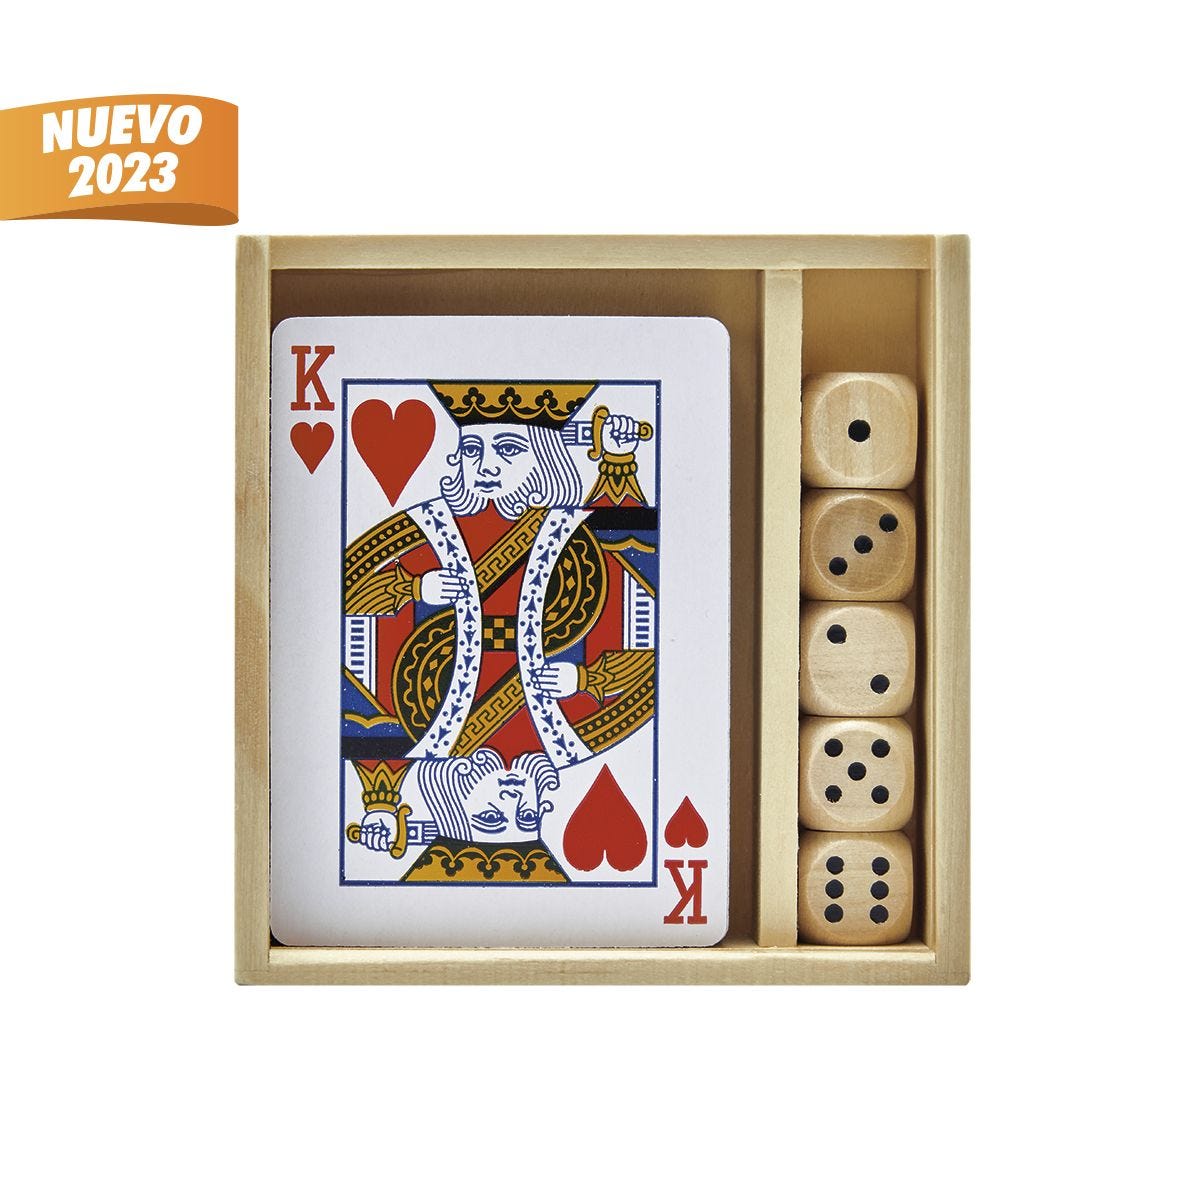 JM 090, SET DE JUEGO SOANA. Set de juego que incluye una baraja, 5 dados y estuche de madera.